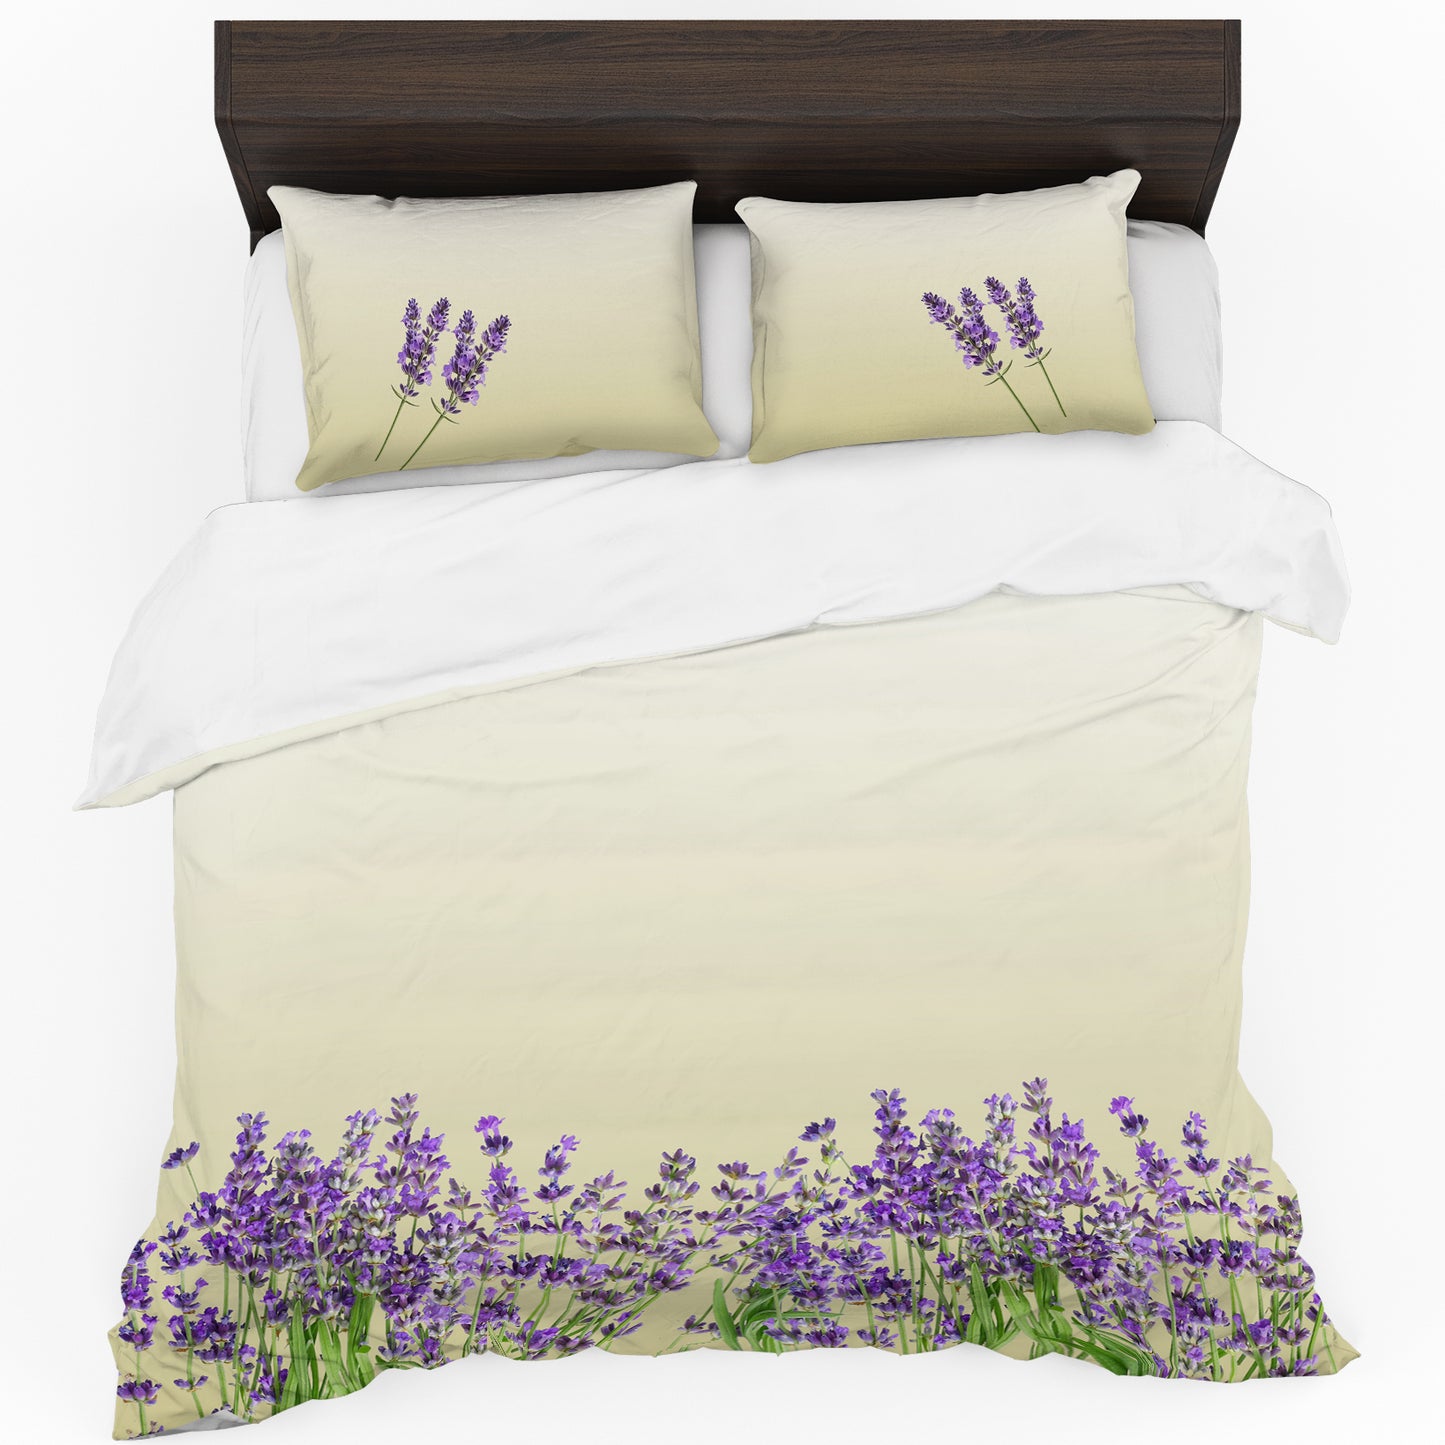 Lavender Field Duvet Cover Set